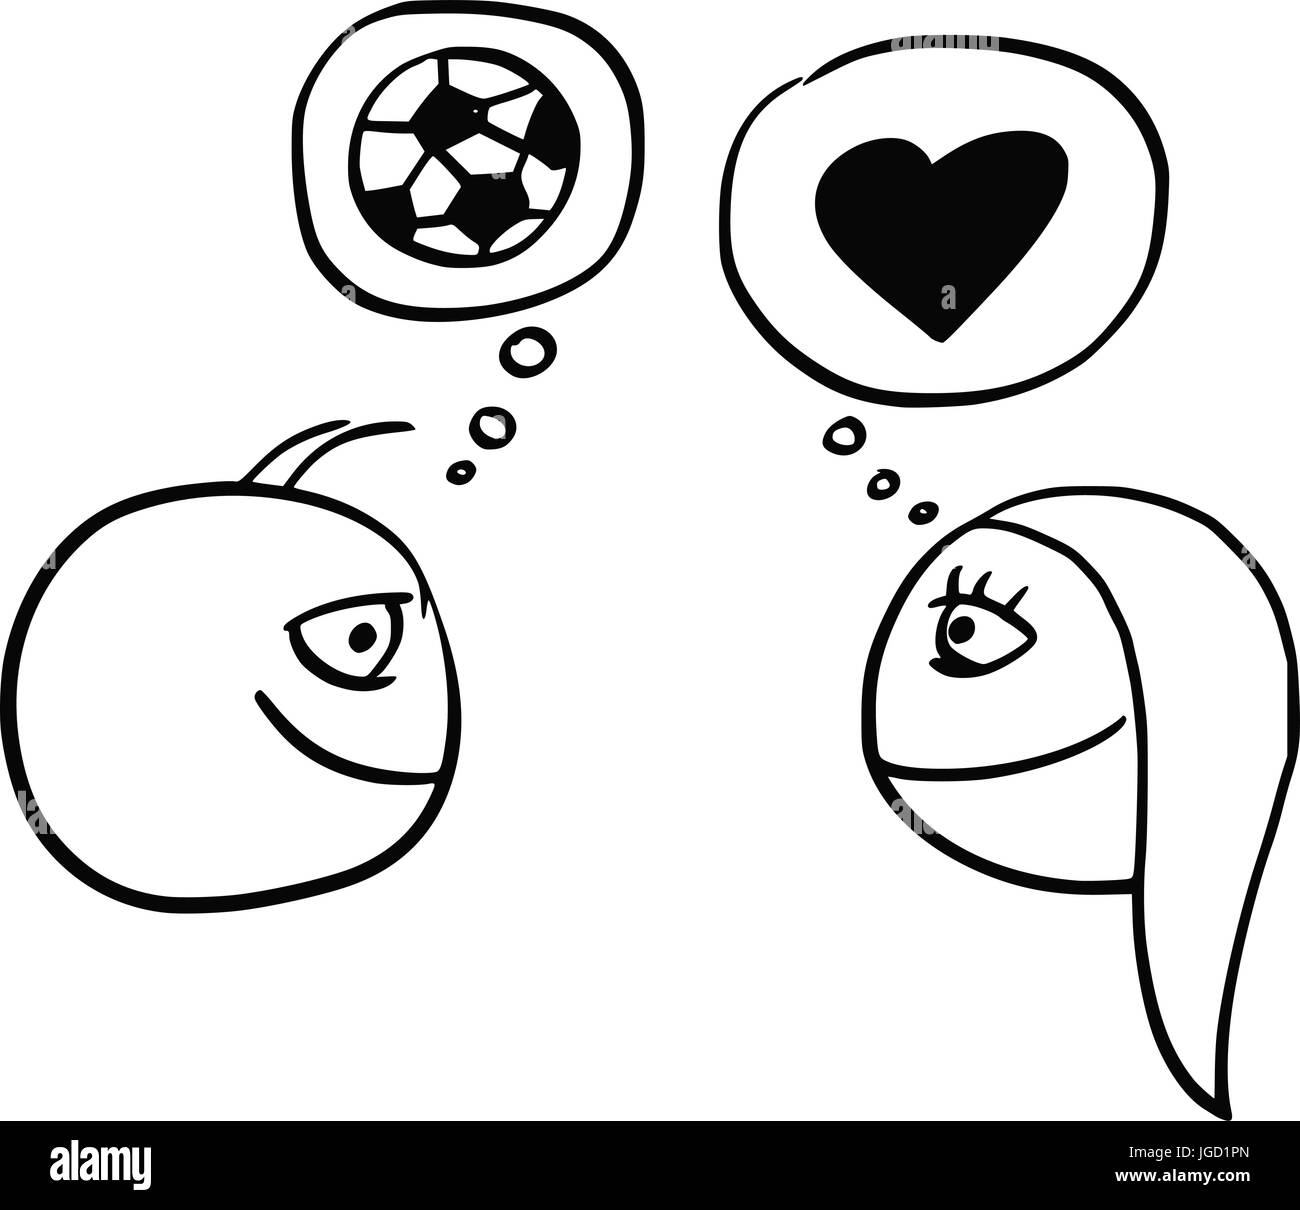 Vector de dibujos animados de la diferencia entre el hombre y la mujer, pensando en el fútbol balón de fútbol y corazón, símbolo del amor y la relación Ilustración del Vector